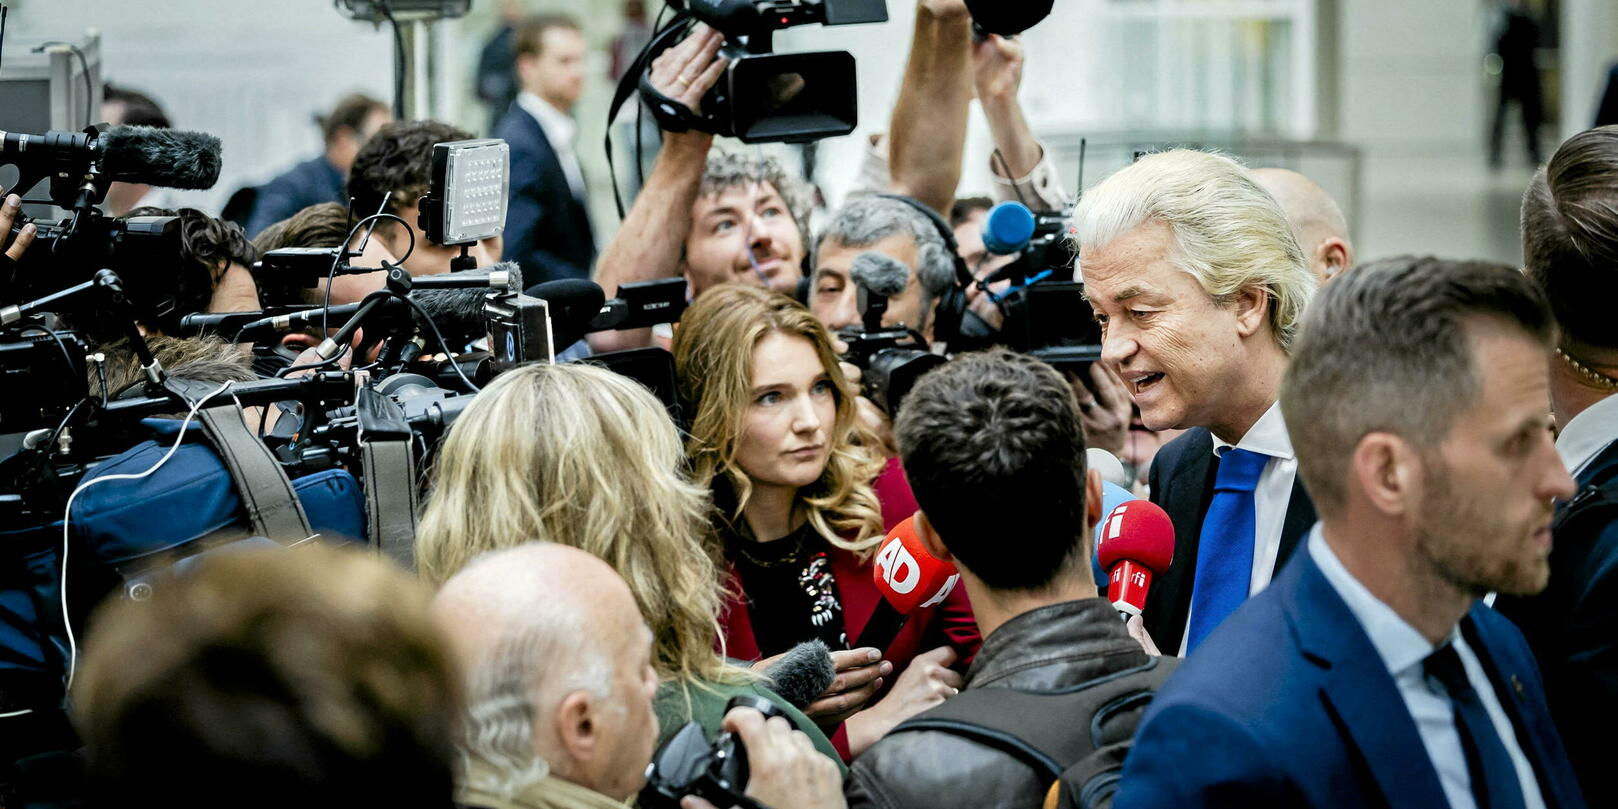 De partij van Geert Wilders kreeg het ministerie van Vreemdelingenzaken